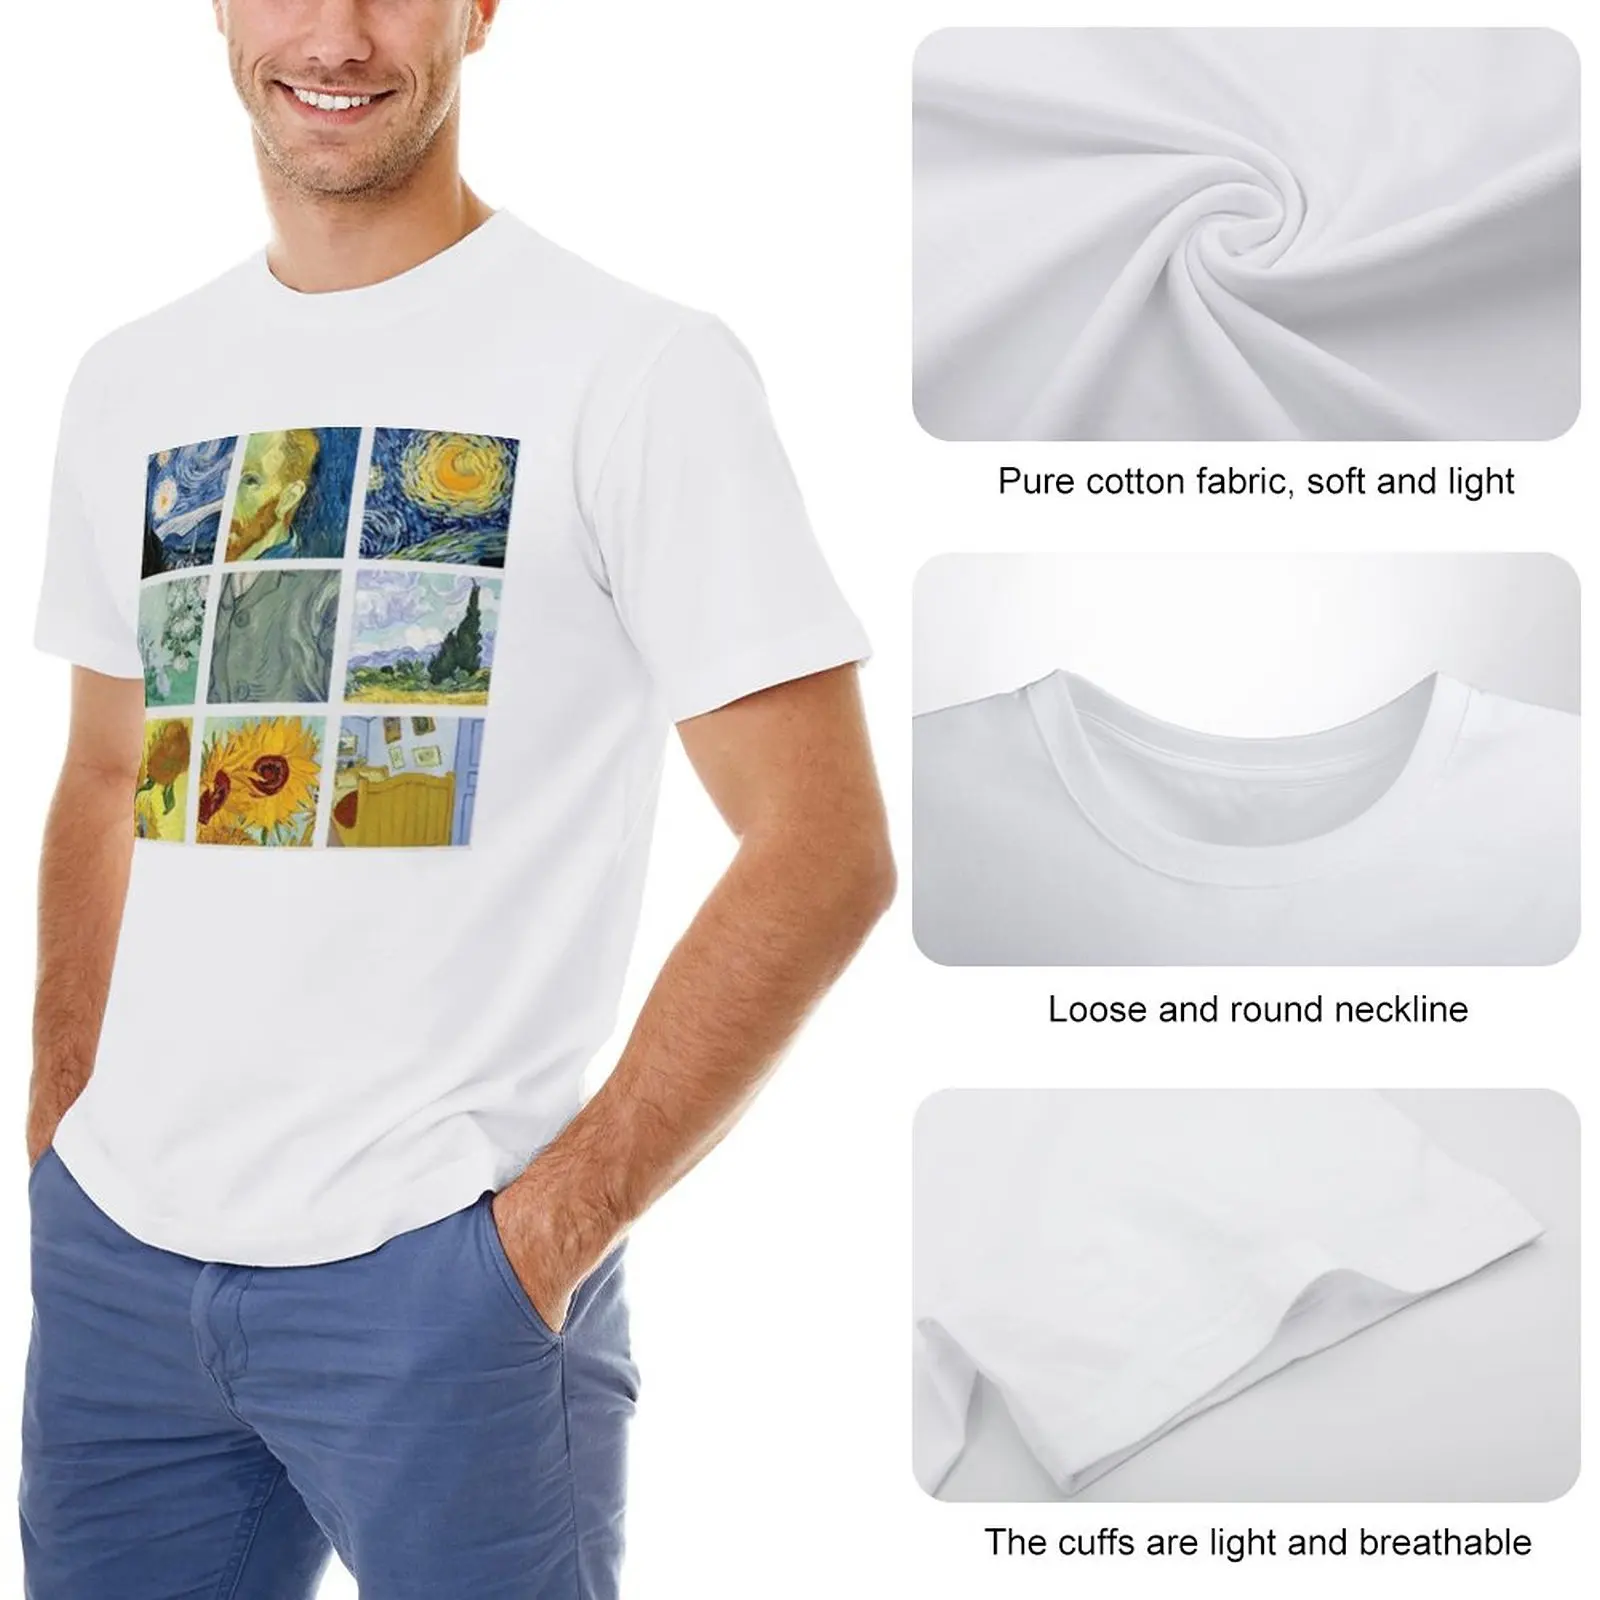 Футболка с рисунком Винсента Ван Гога в сетку, забавная футболка, корейская мода, мужские футболки большого и высокого роста Изображение 1